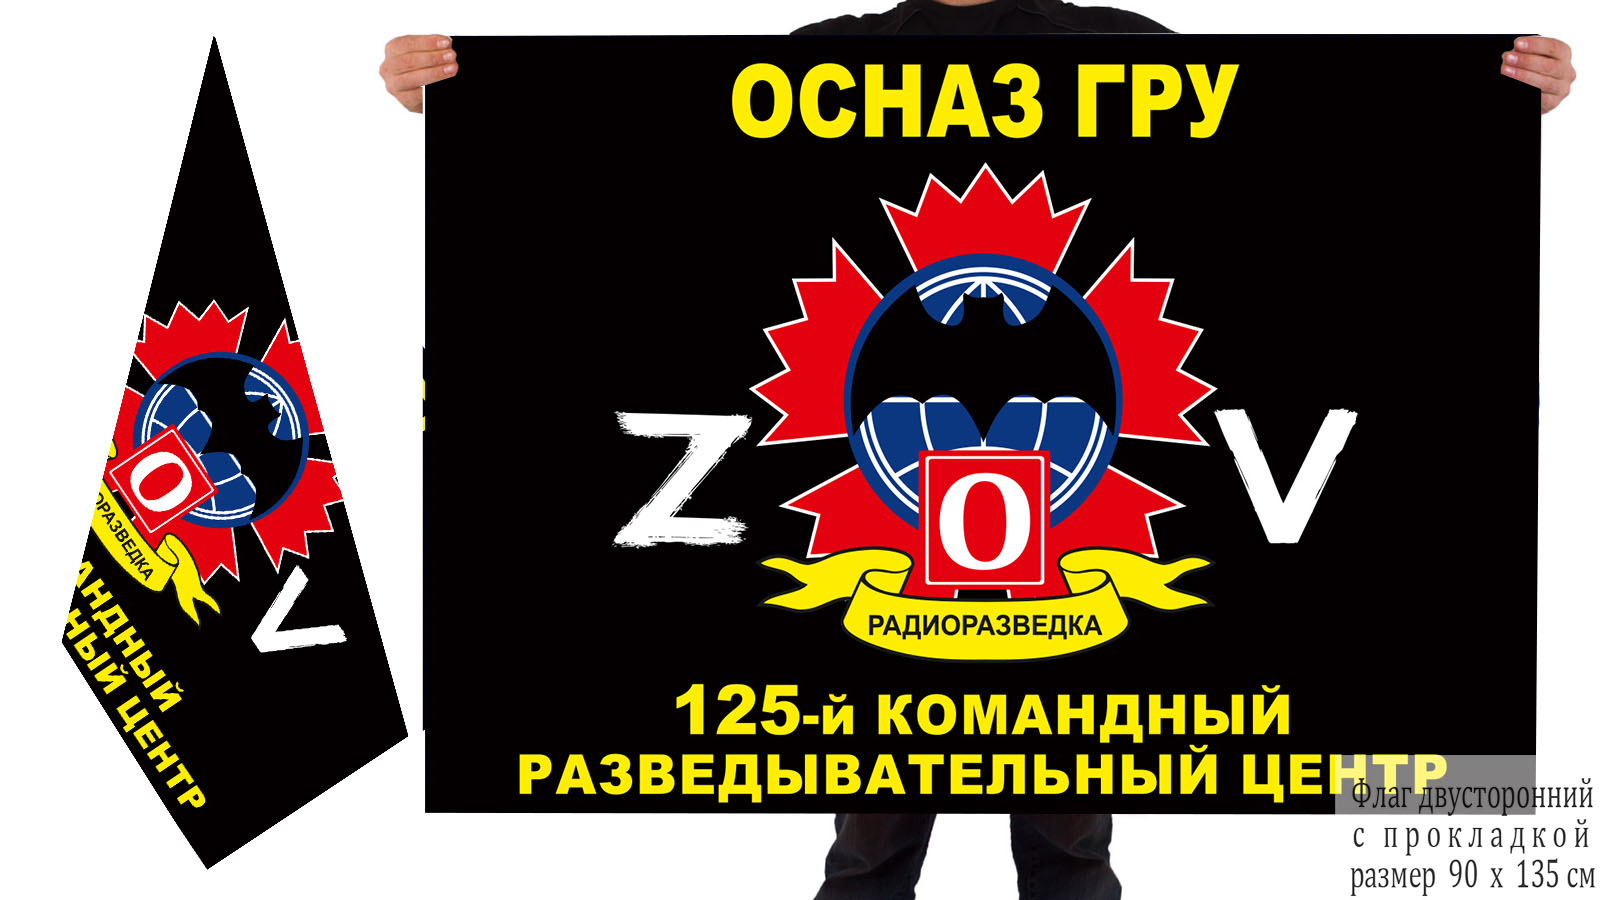 Двусторонний флаг 125 КРЦ ОсНаз ГРУ "Спецоперация Z"